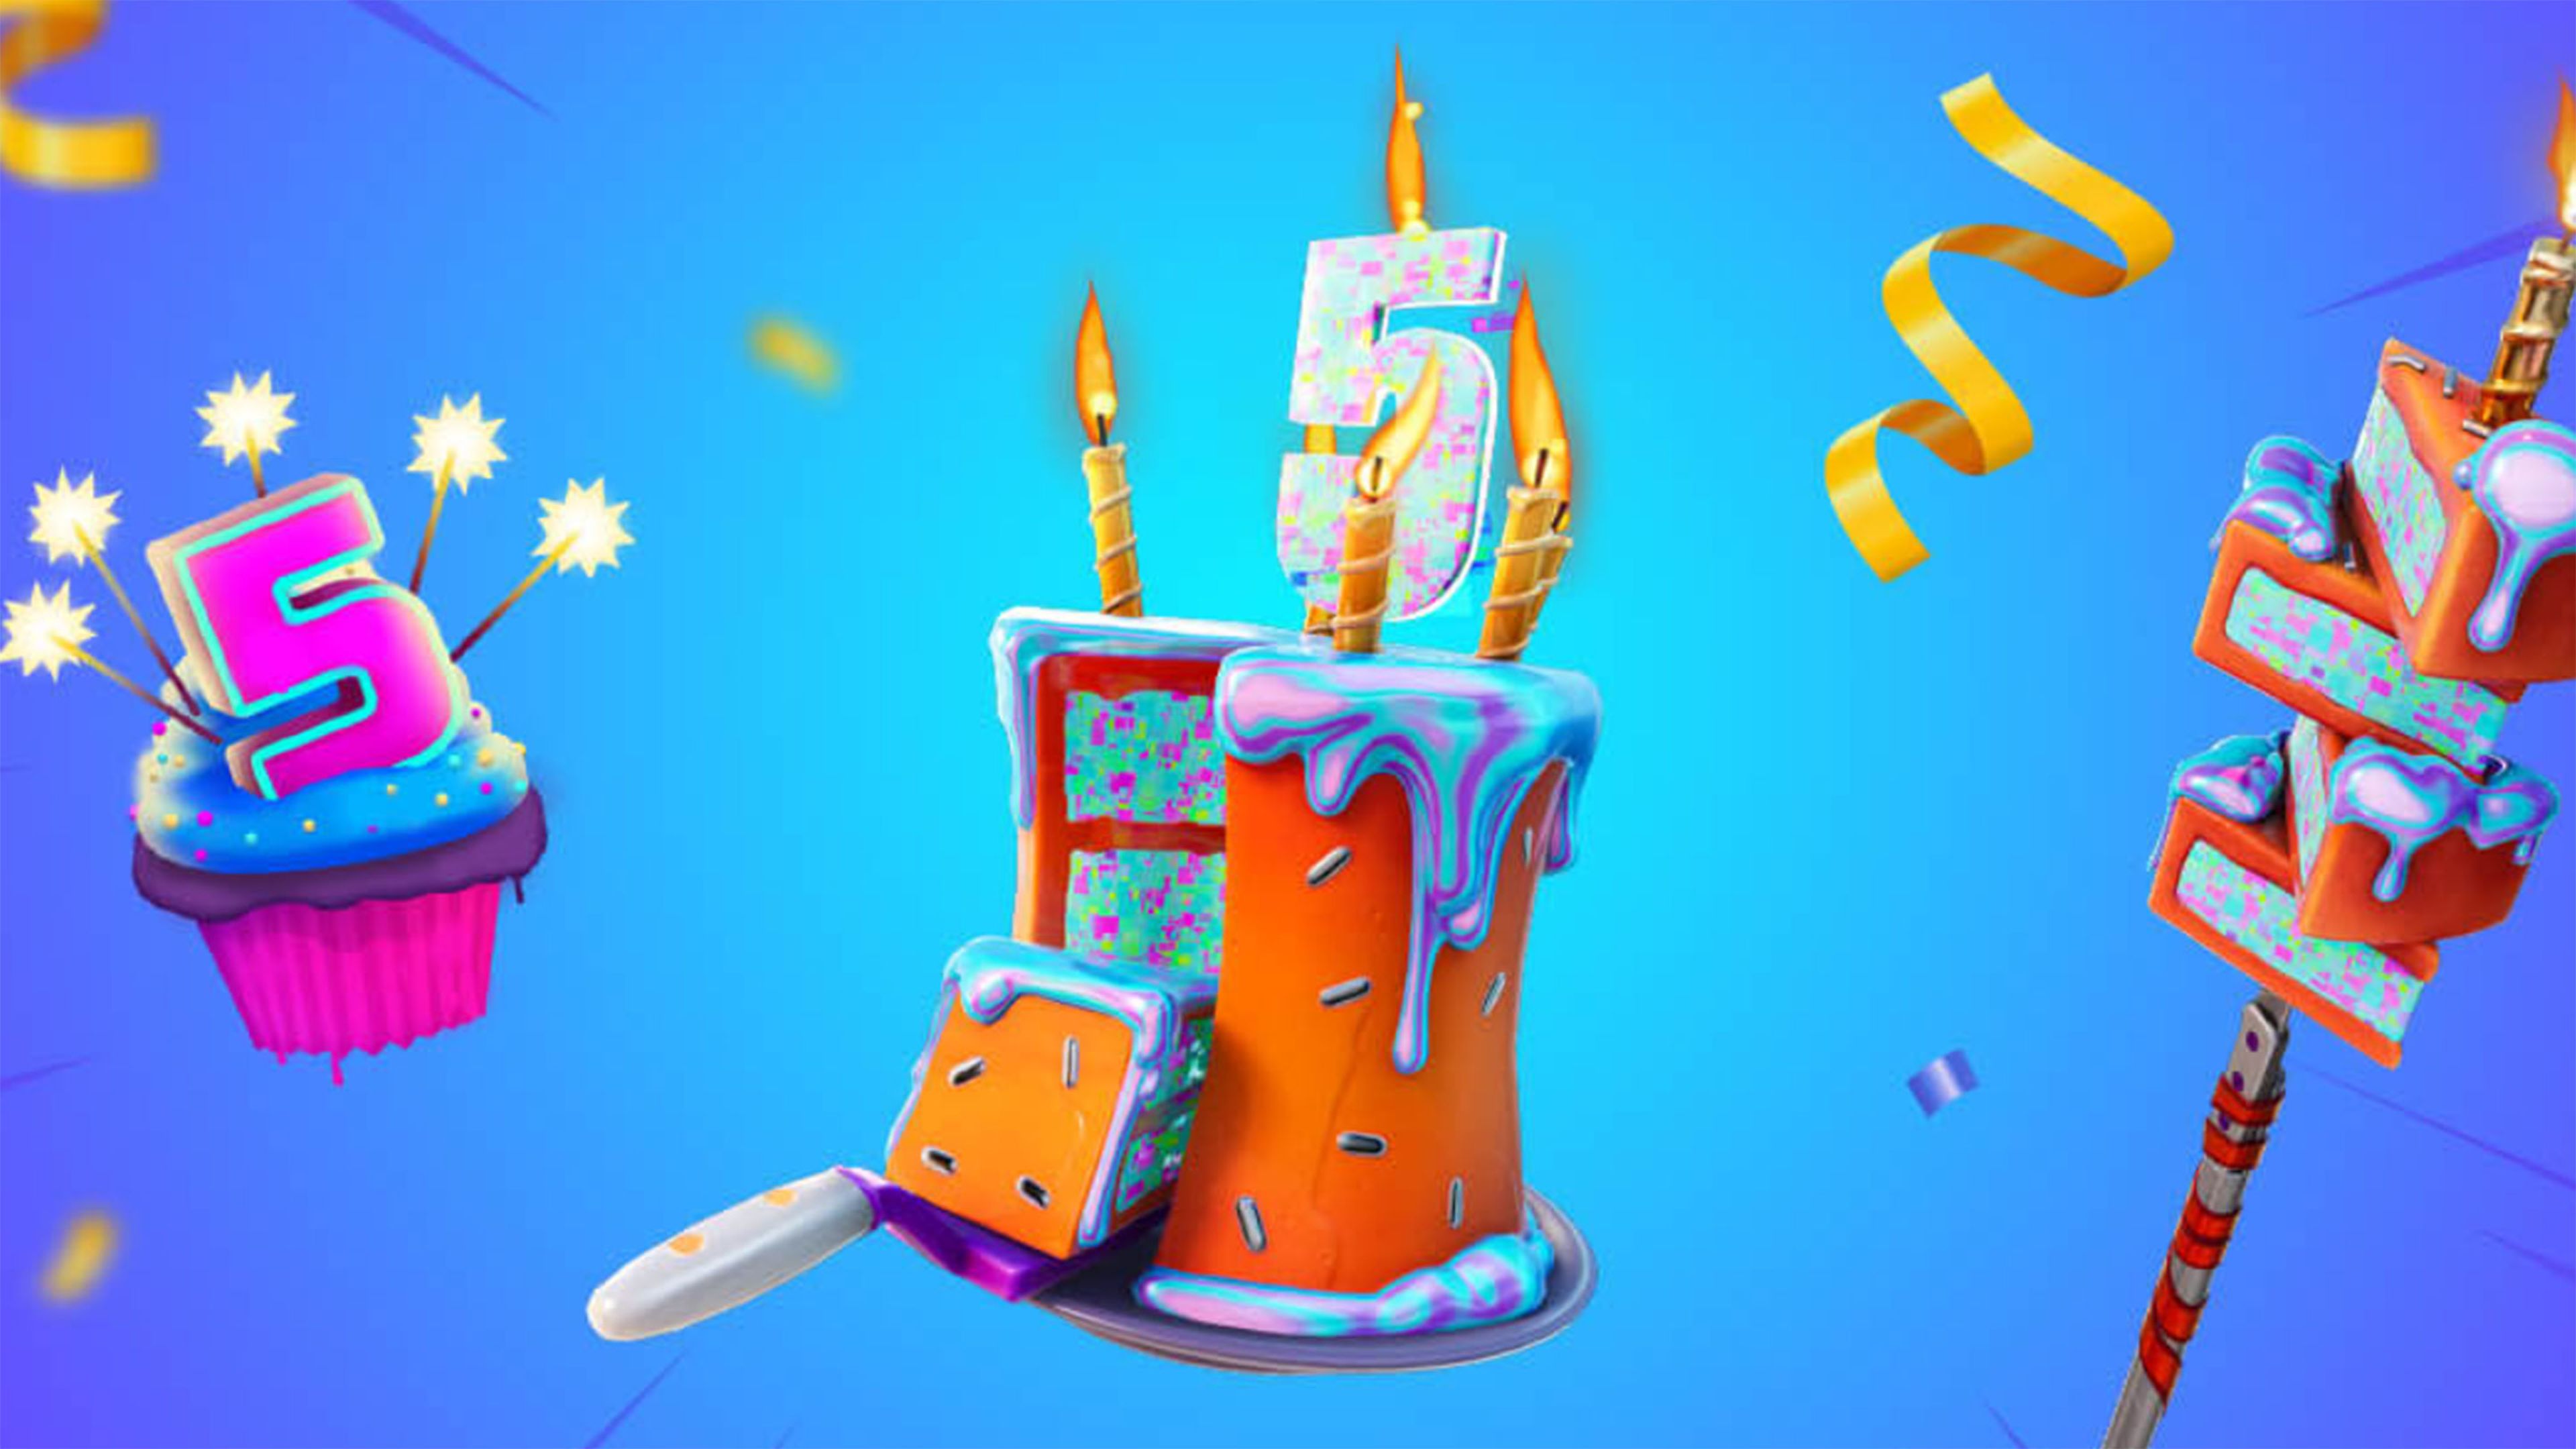 Fortnite celebrará su 4.° aniversario con estos regalos para sus fans